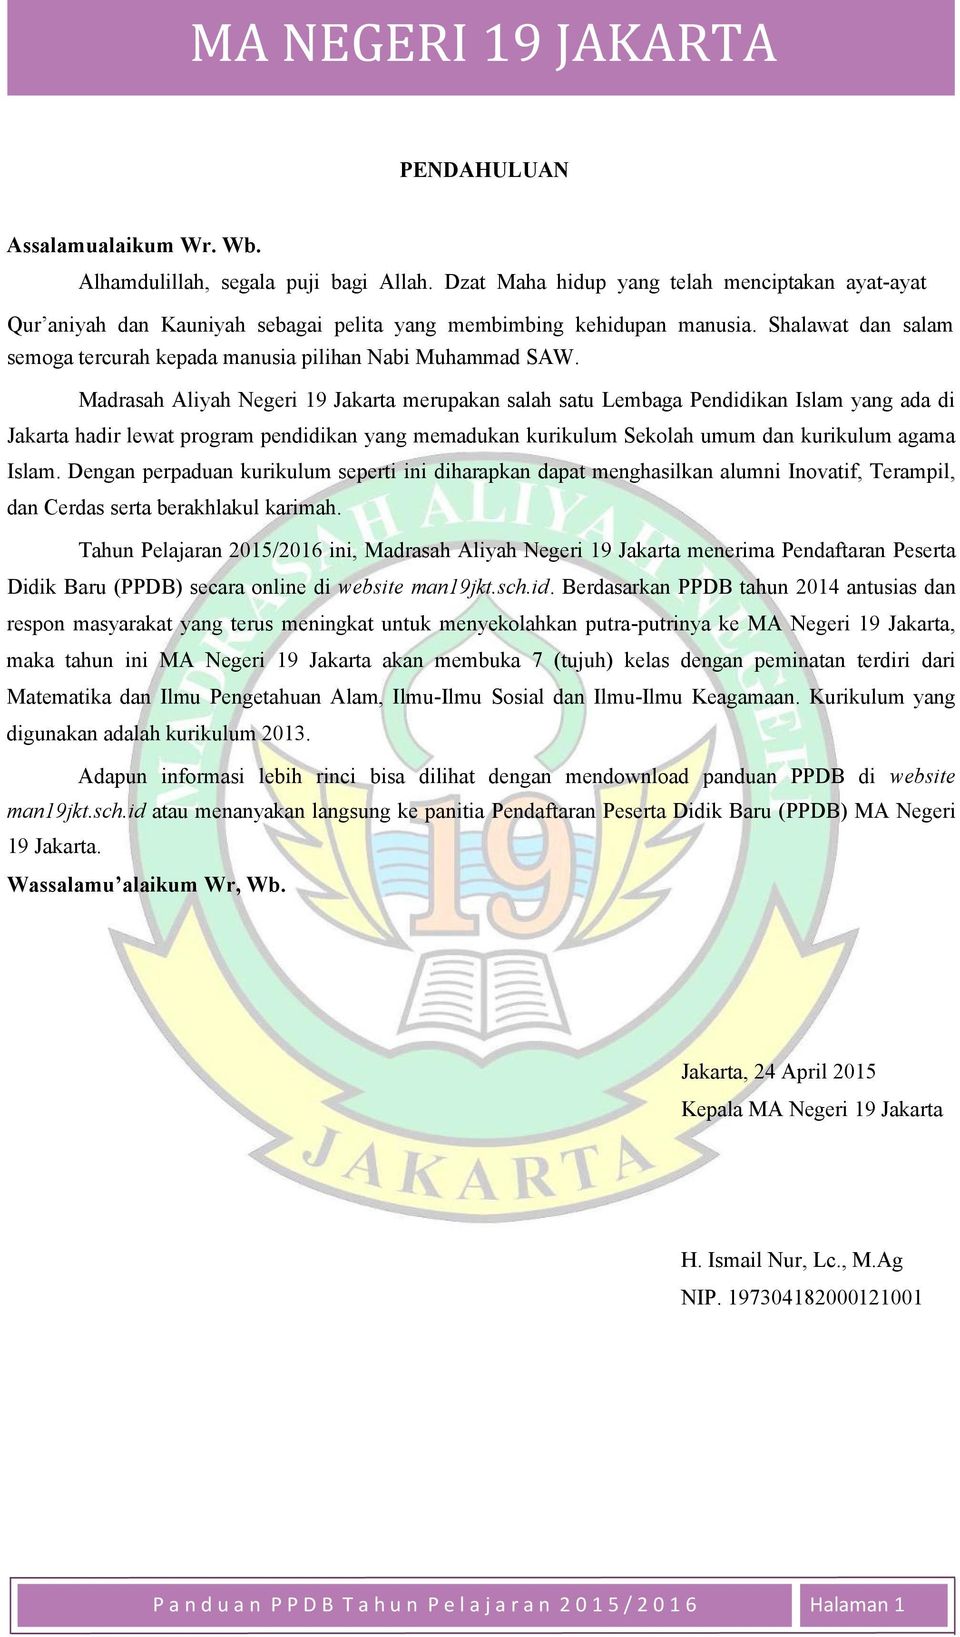 Madrasah Aliyah Negeri 19 Jakarta merupakan salah satu Lembaga Pendidikan Islam yang ada di Jakarta hadir lewat program pendidikan yang memadukan kurikulum Sekolah umum dan kurikulum agama Islam.